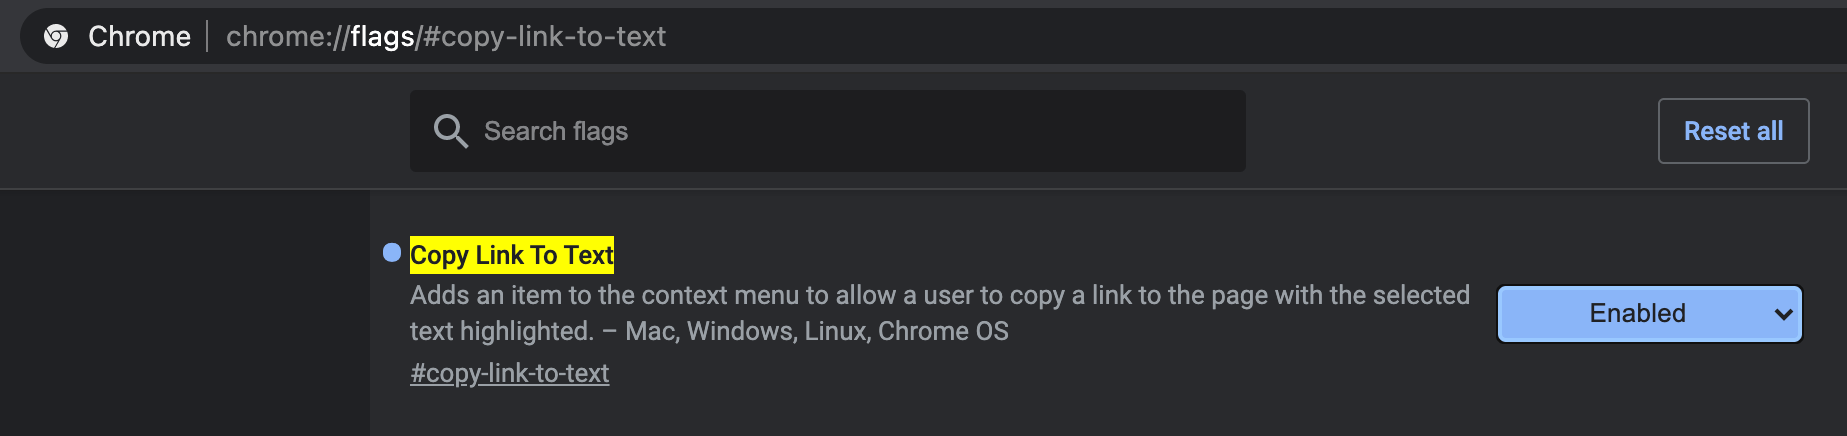 Włączanie flagi „Copy Link To Text” we flagach Chrome'a 90